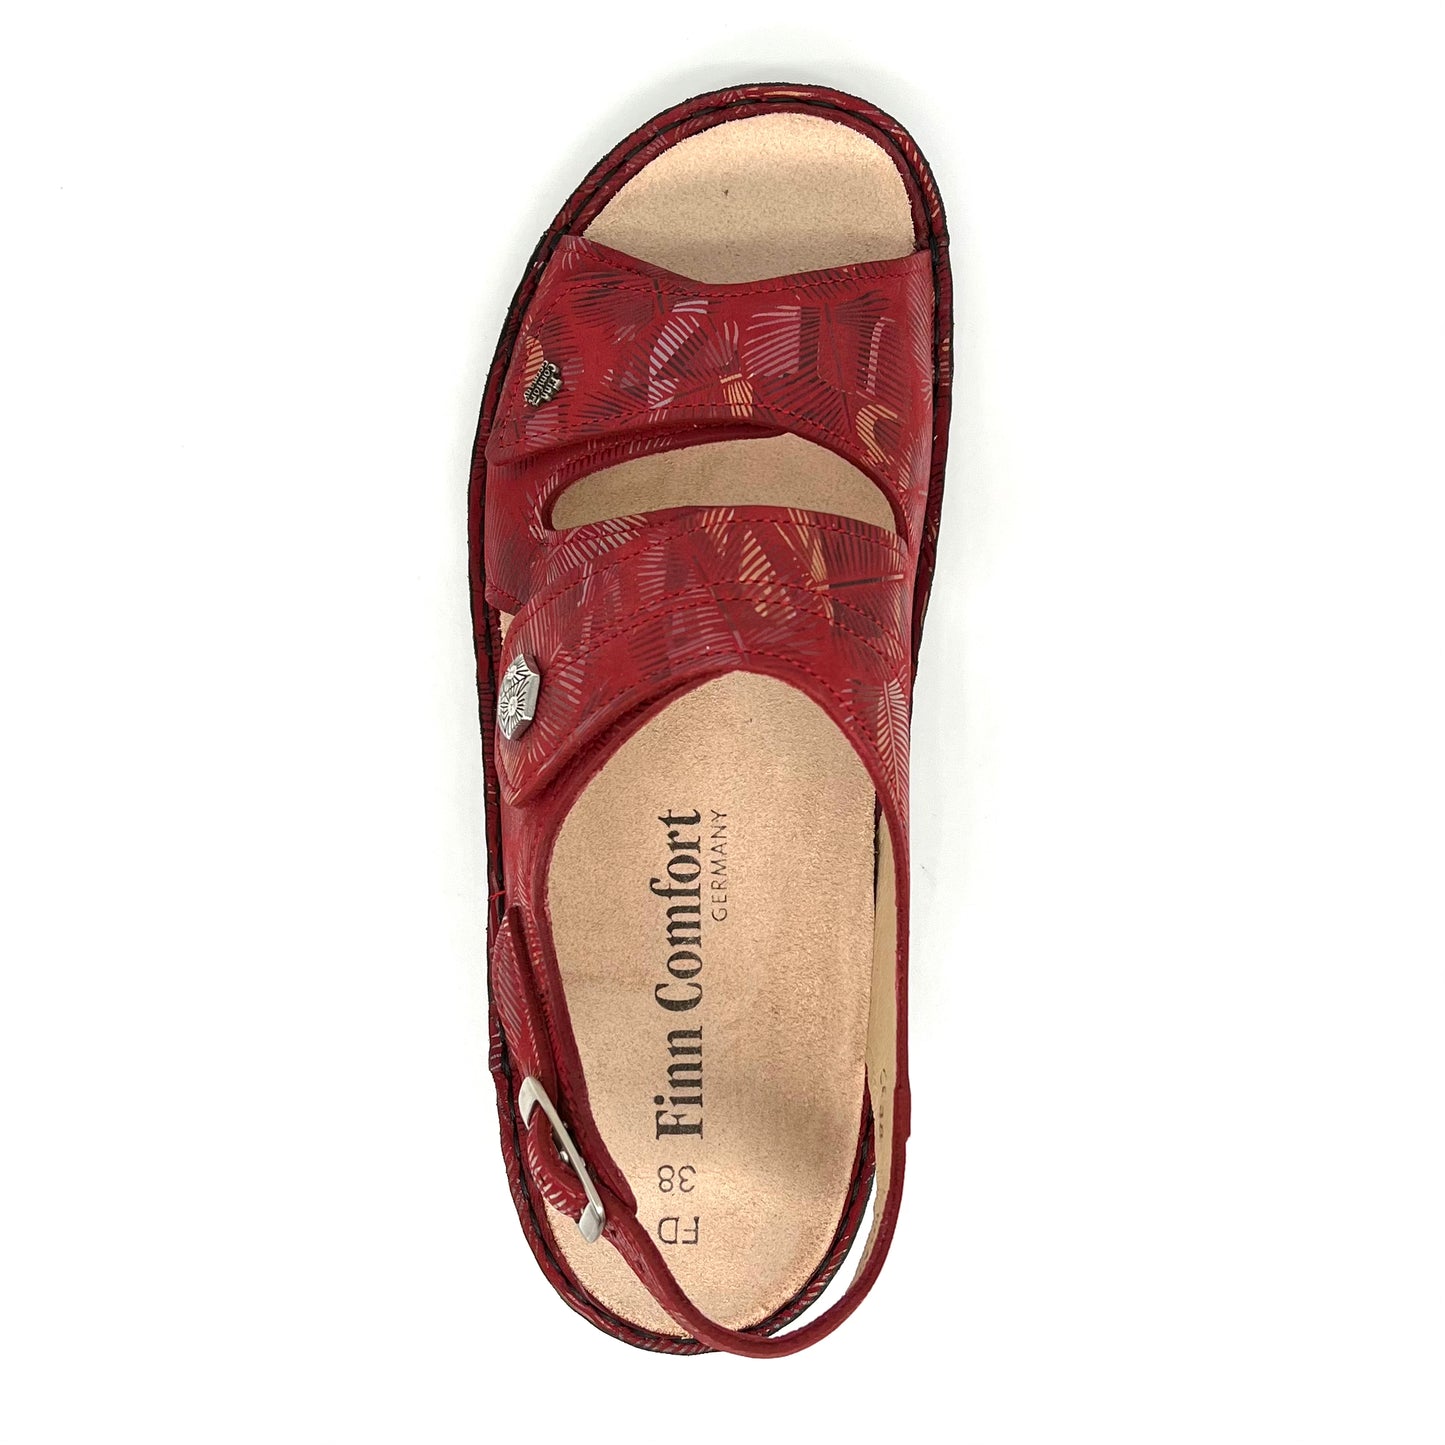 Damen Klett Sandalette Rot von Finn Comfort 17502